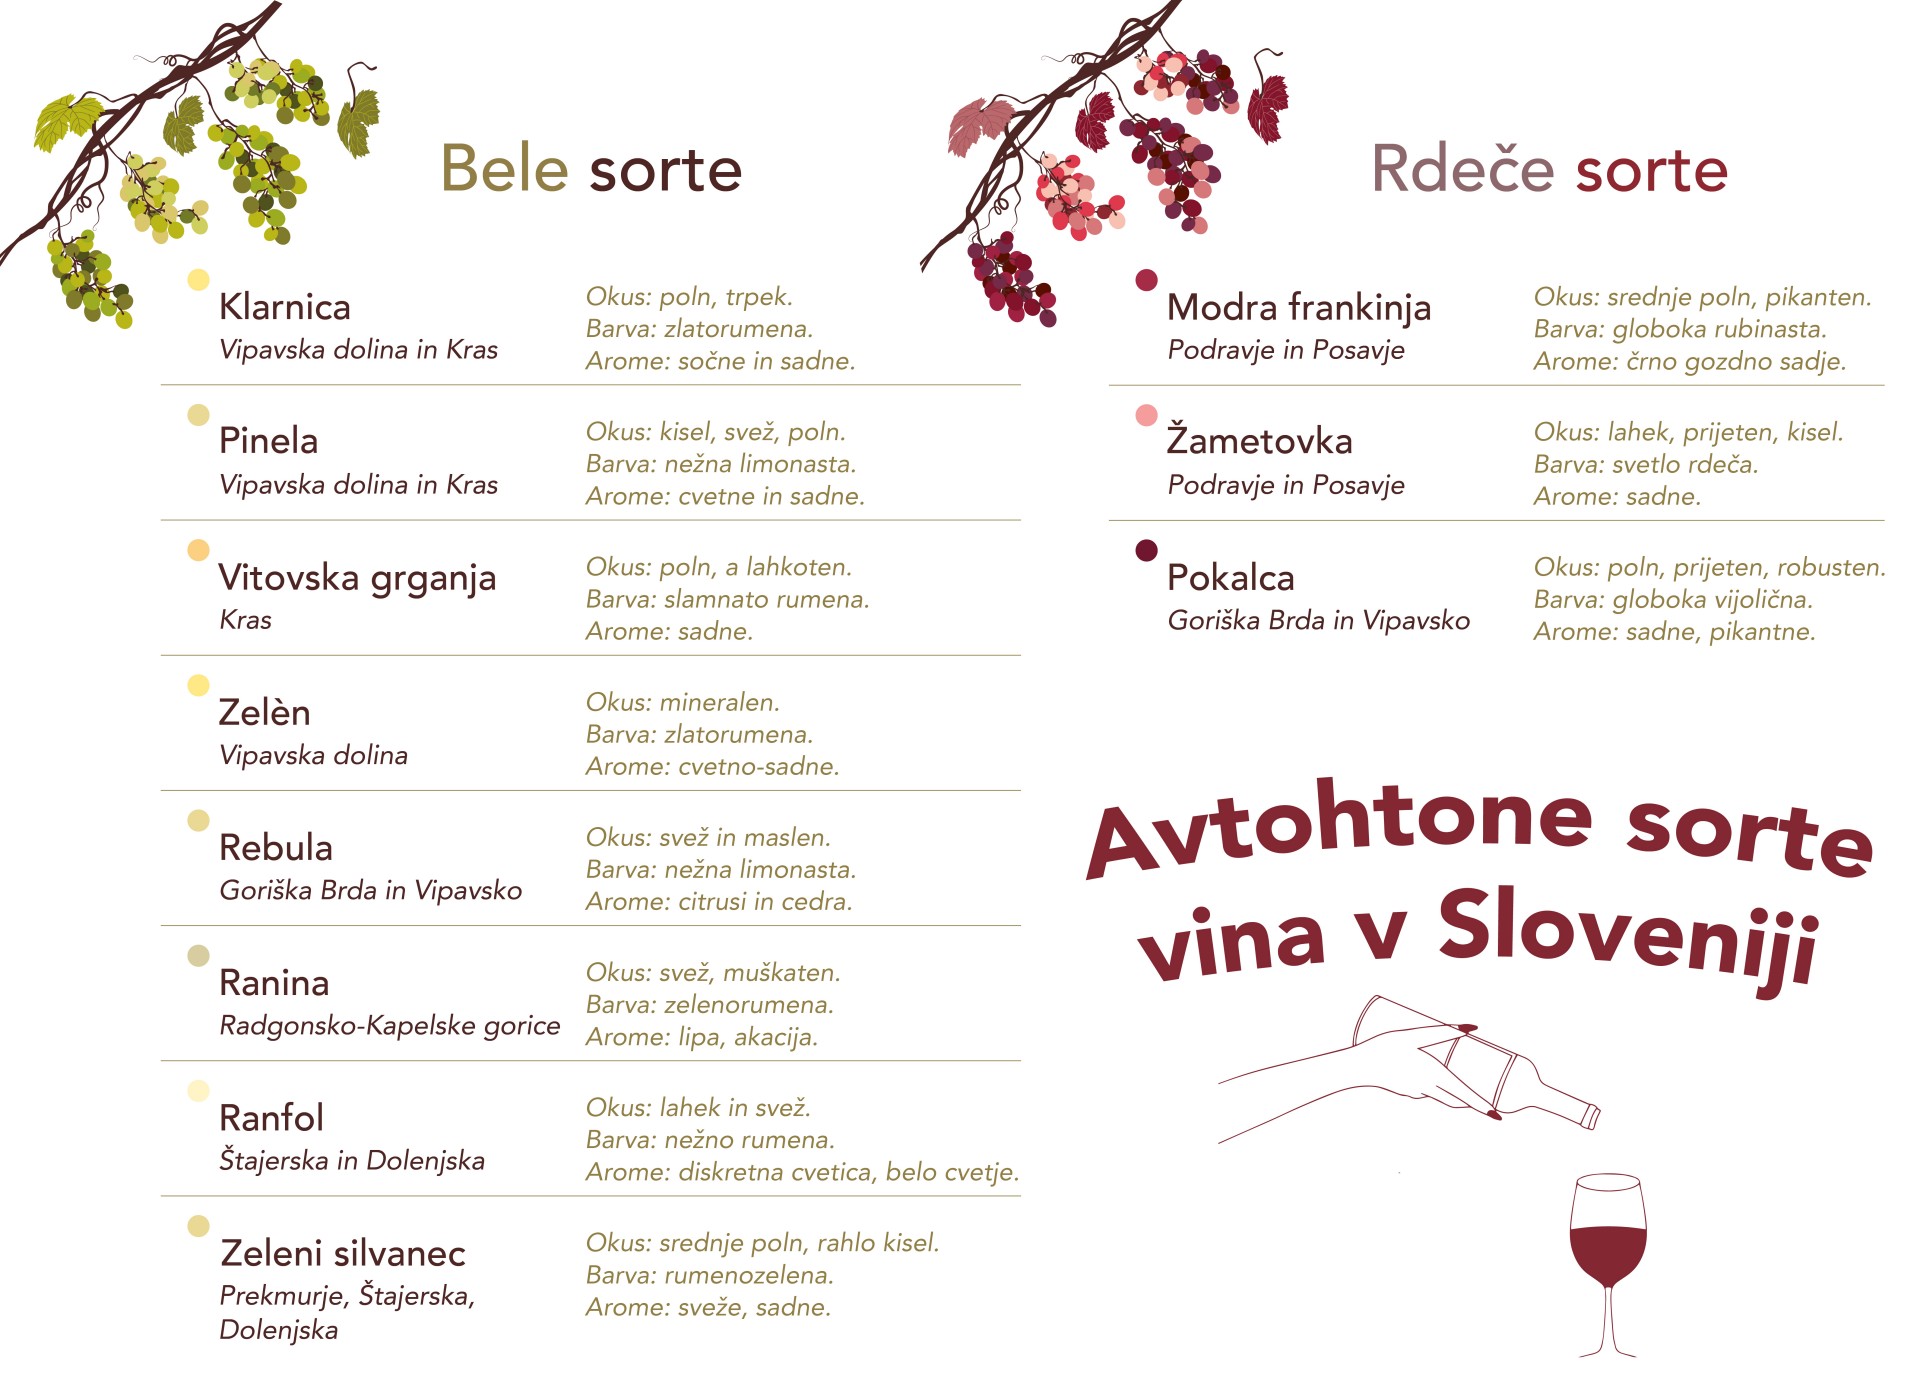 Vino, sonce v steklenici, avtohtone sorte vina v Sloveniji, SPAR SI